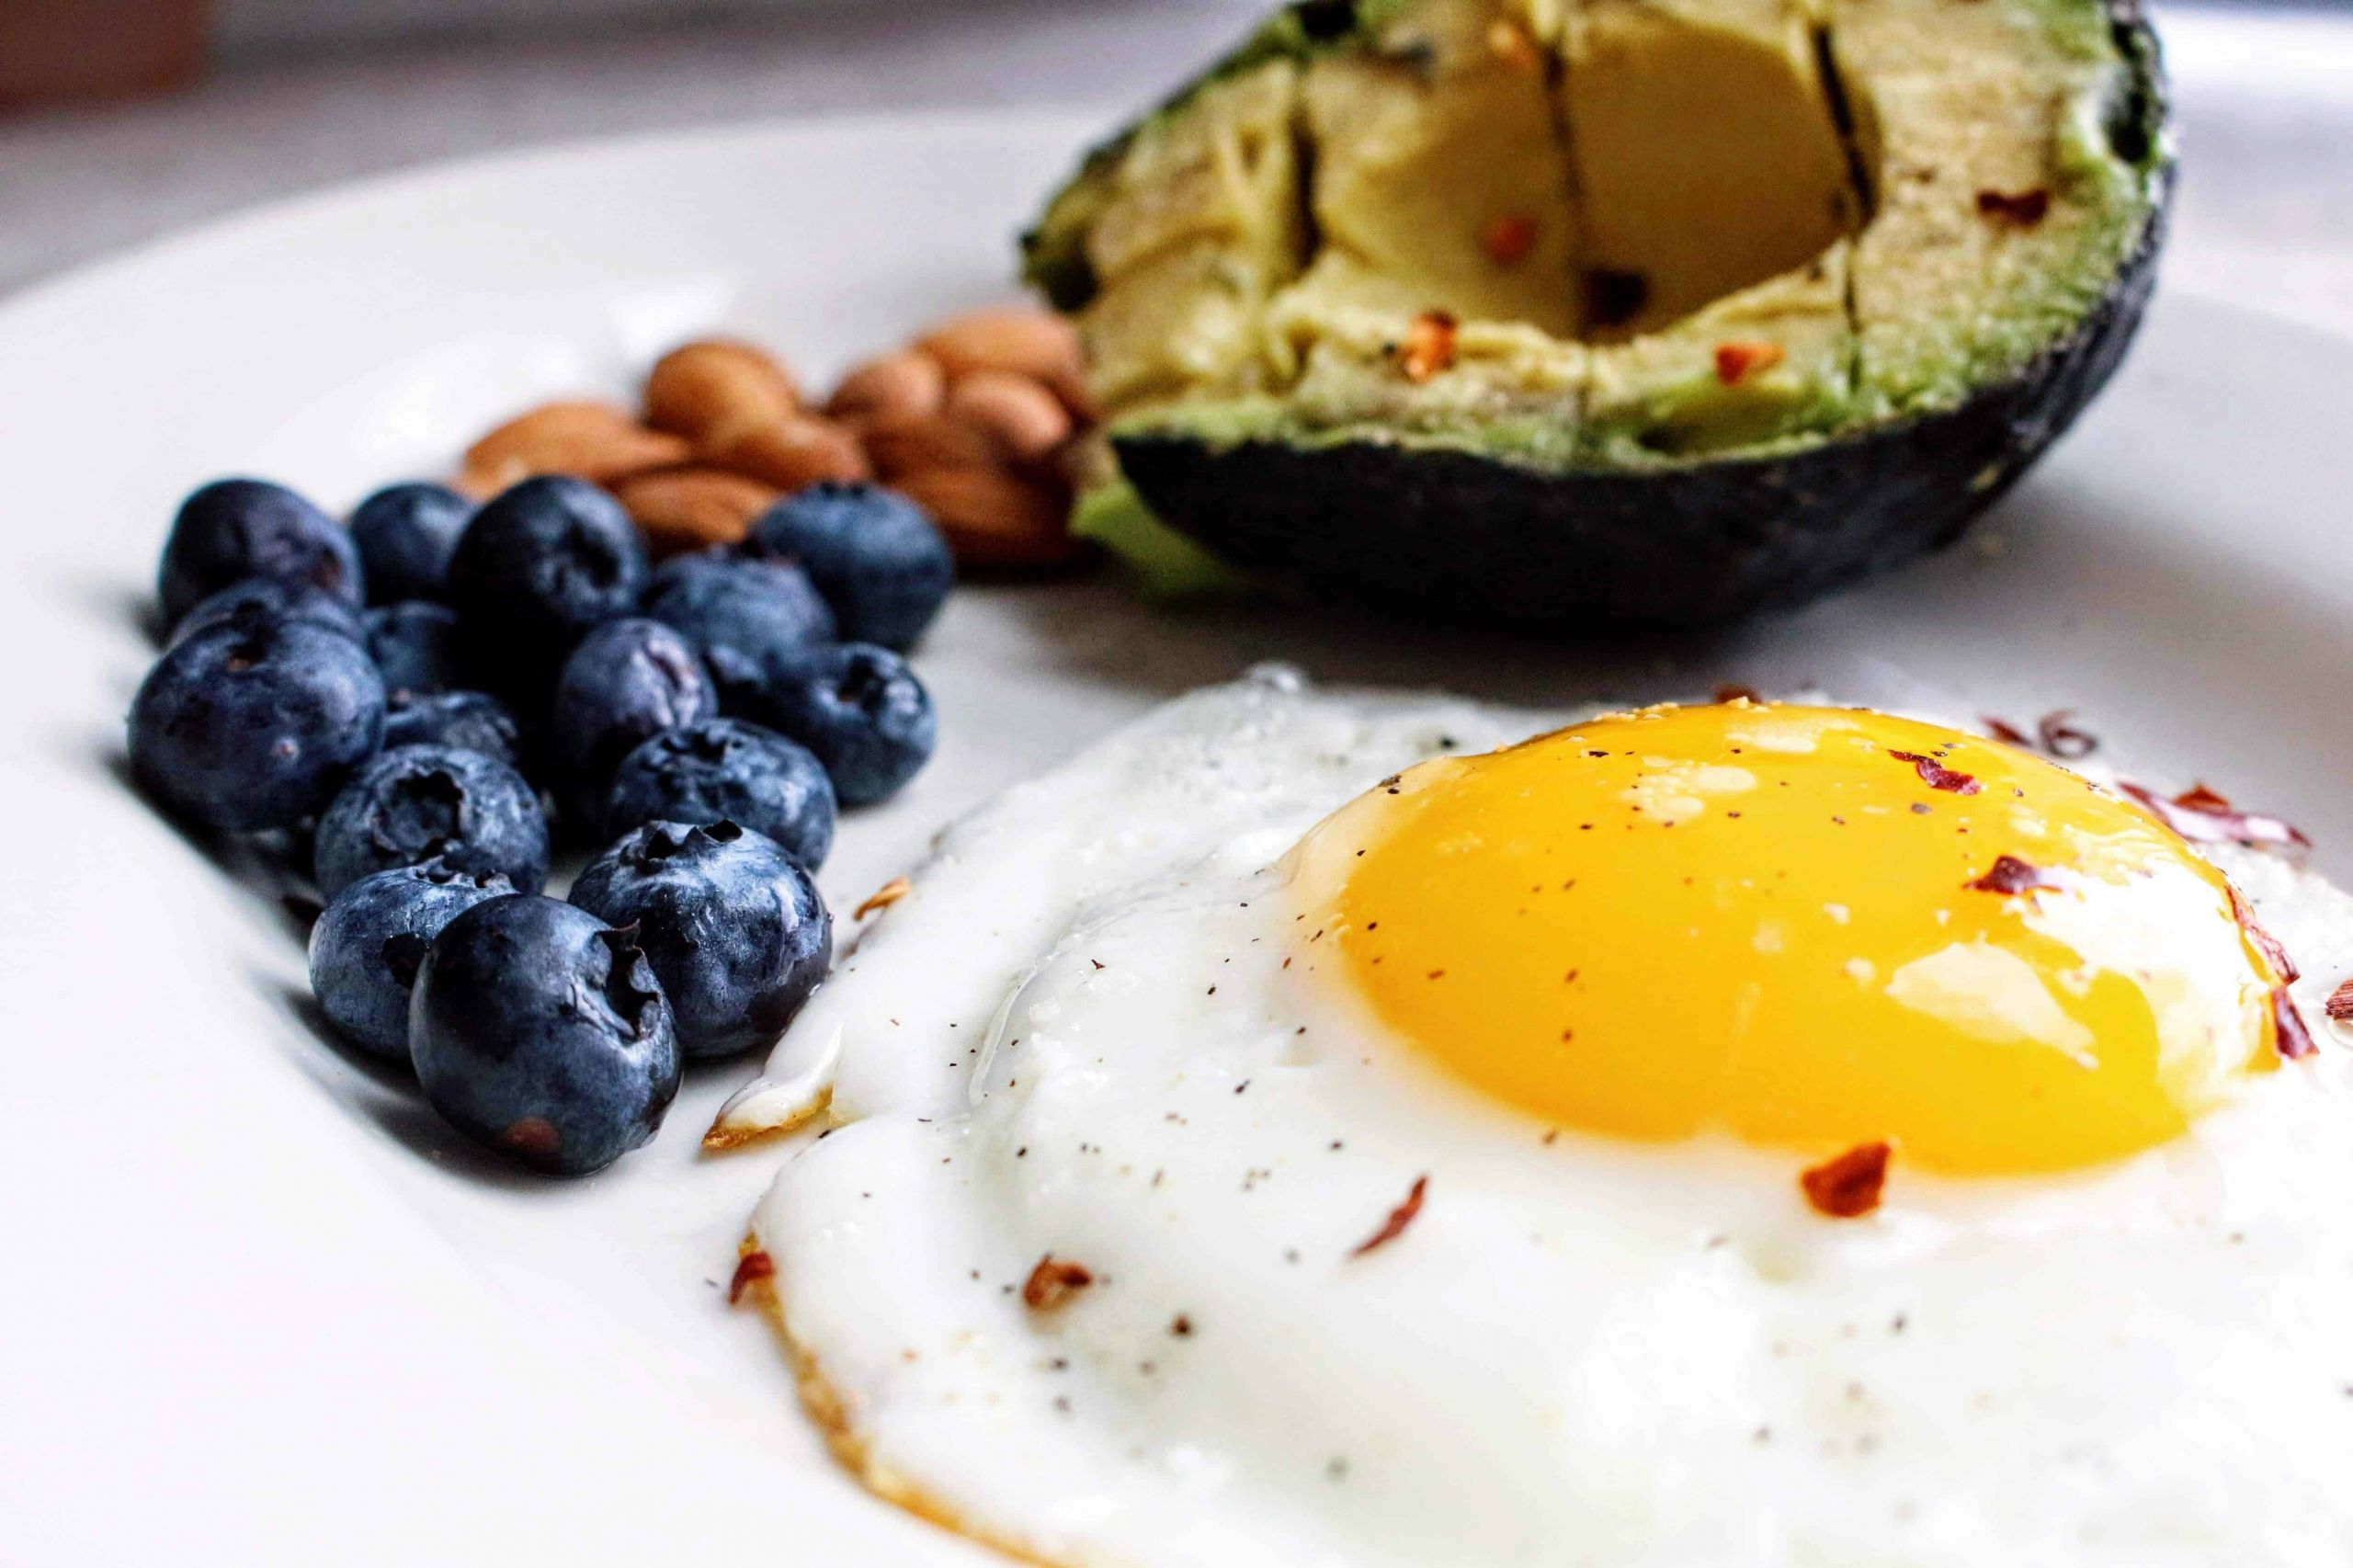 Keto Diet Breakfast Ideas Fresh 50 Easy Keto Breakfast Ideas to Lose Weight Meal Prepify